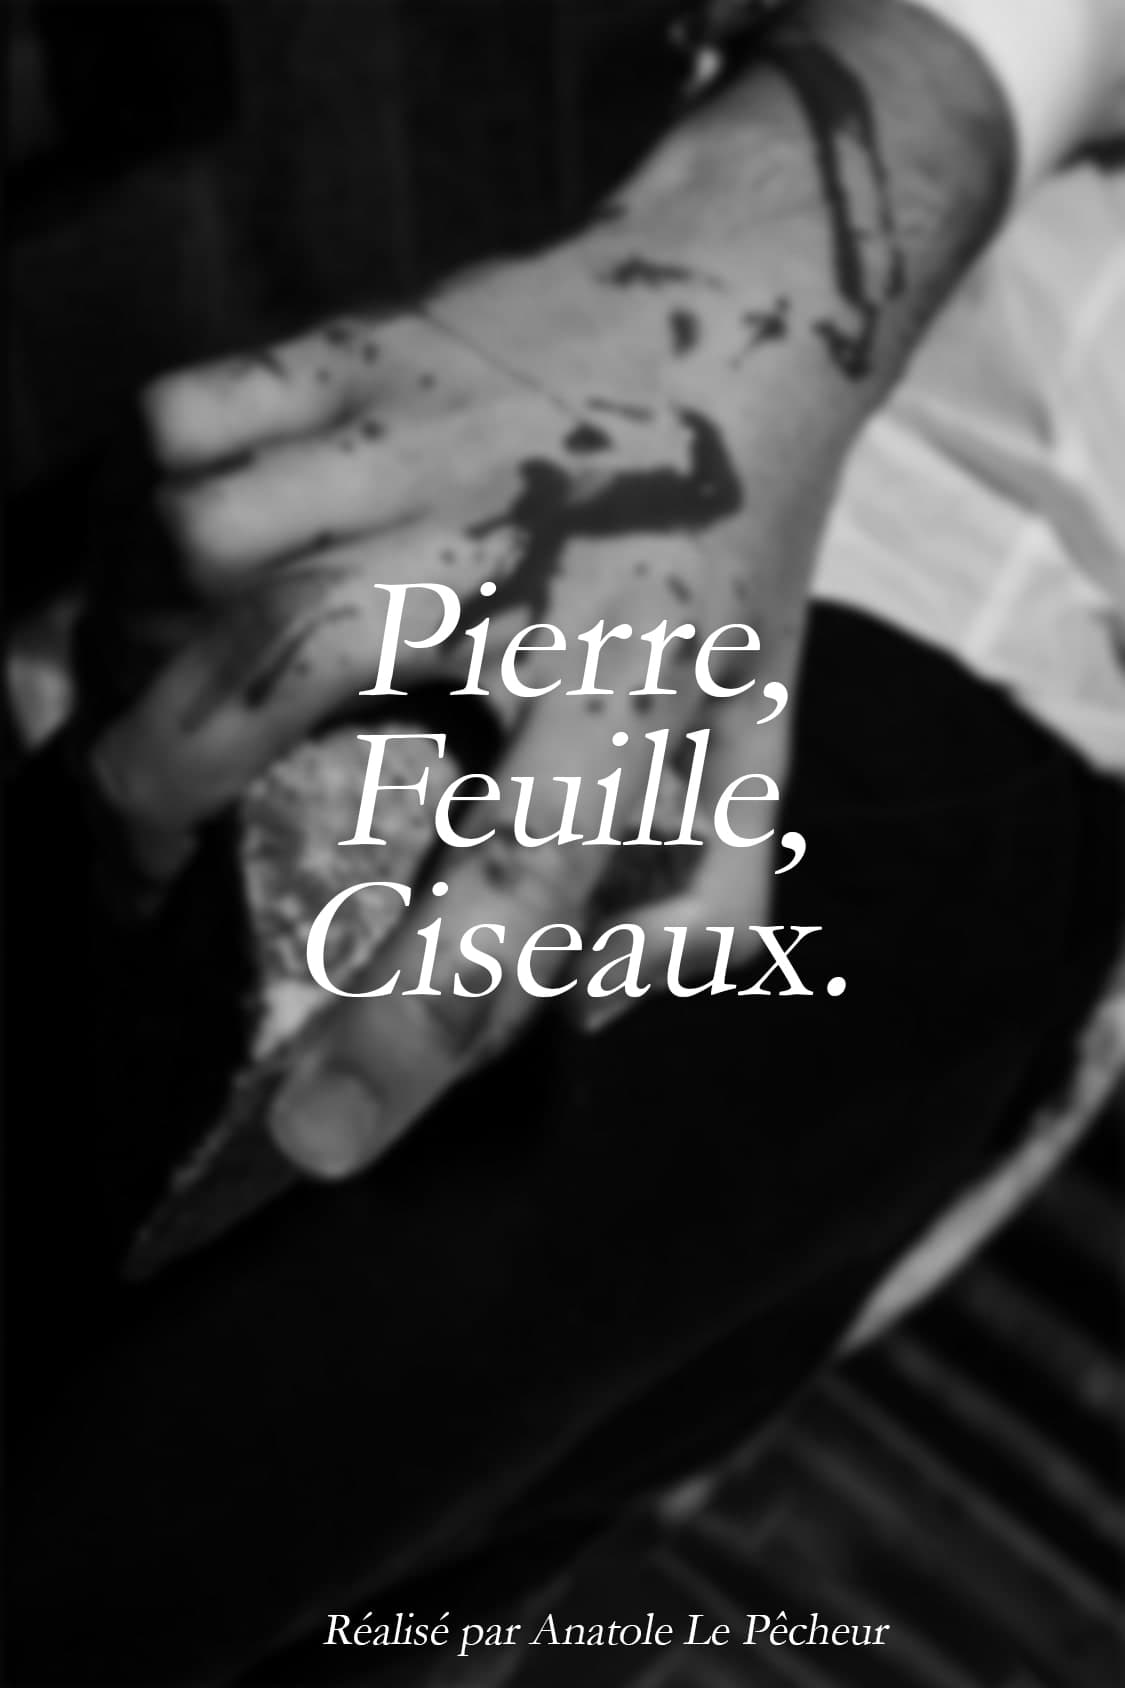 Pierre, Feuille, Ciseaux.